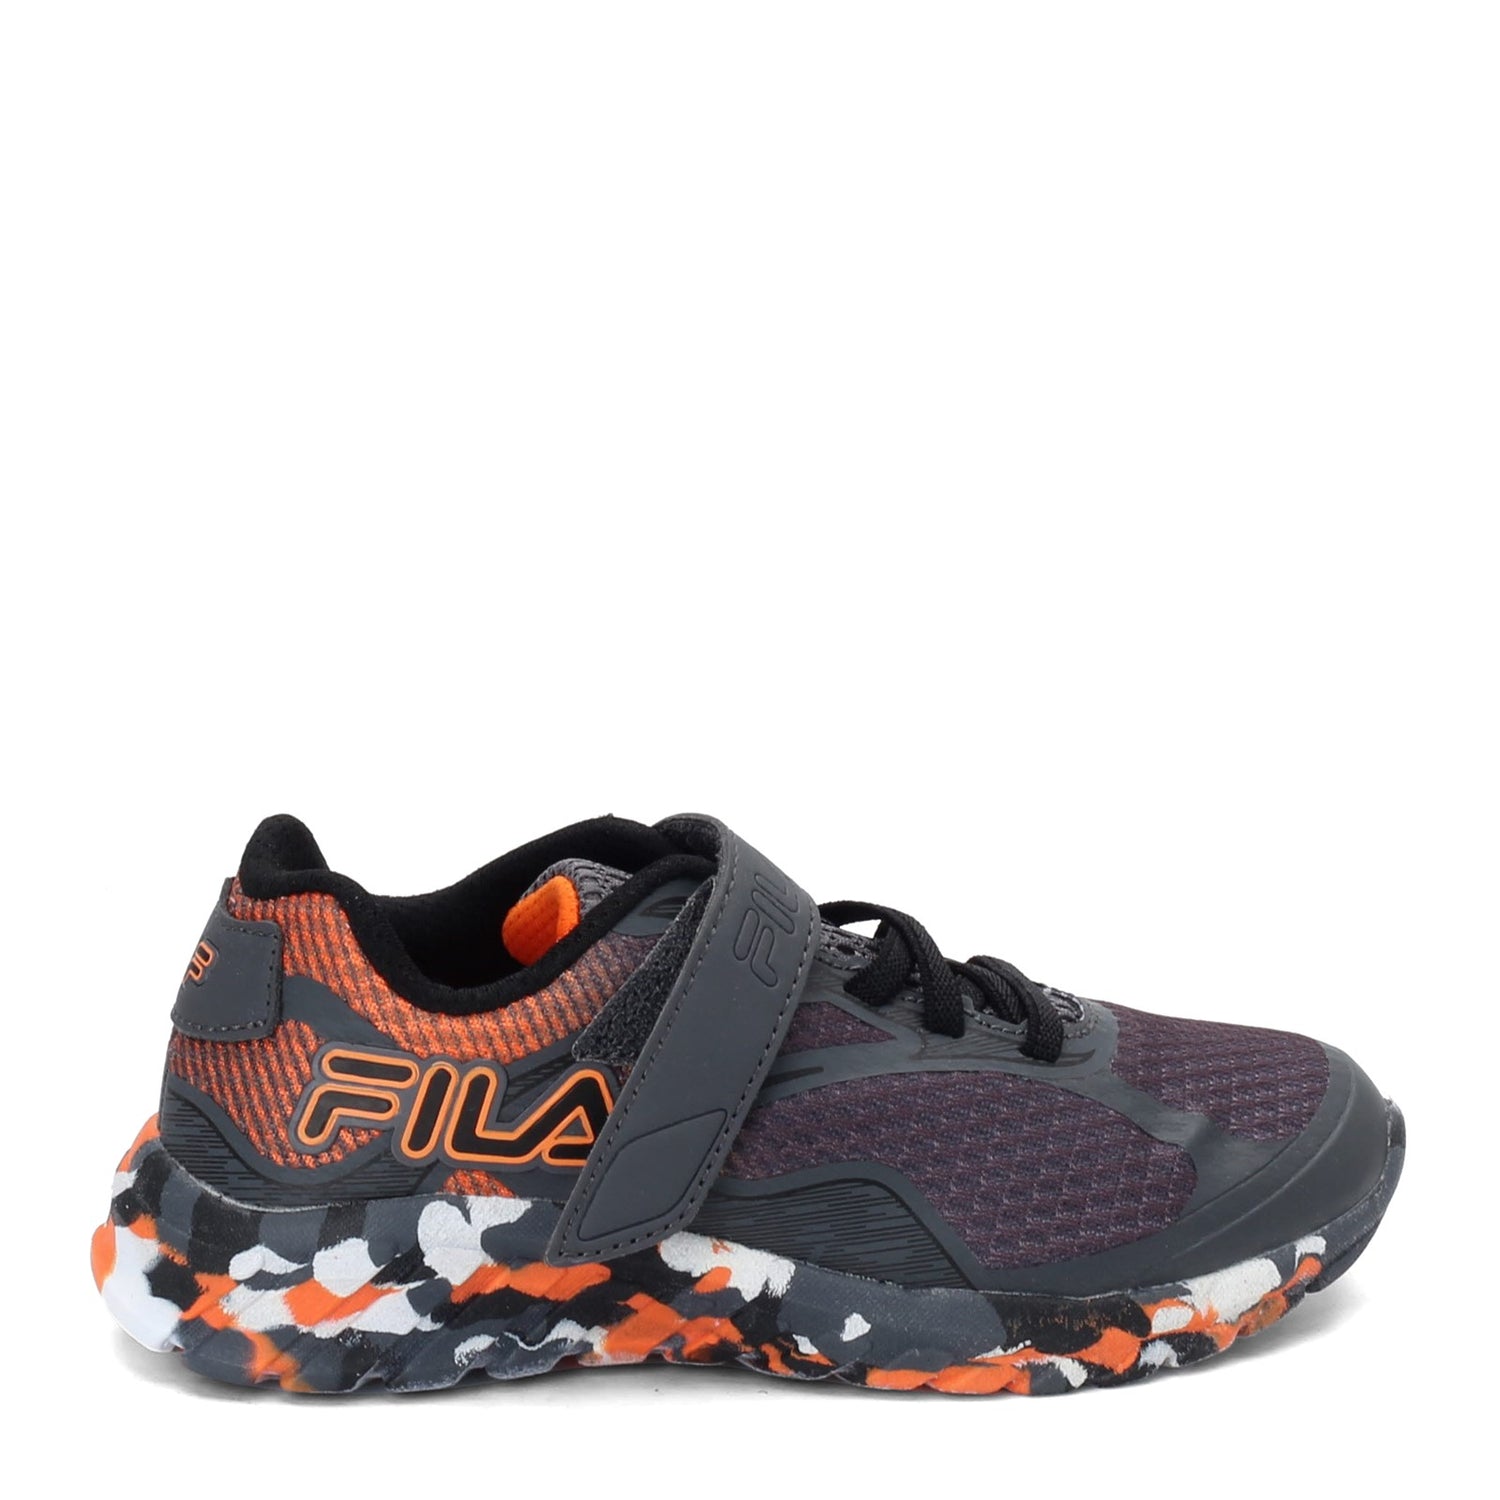 Peltz Shoes  Boy's Fila Primeforce 4 Strap Sneaker - Little Kid & Big Kid GREY ORANGE 3RM01006-054